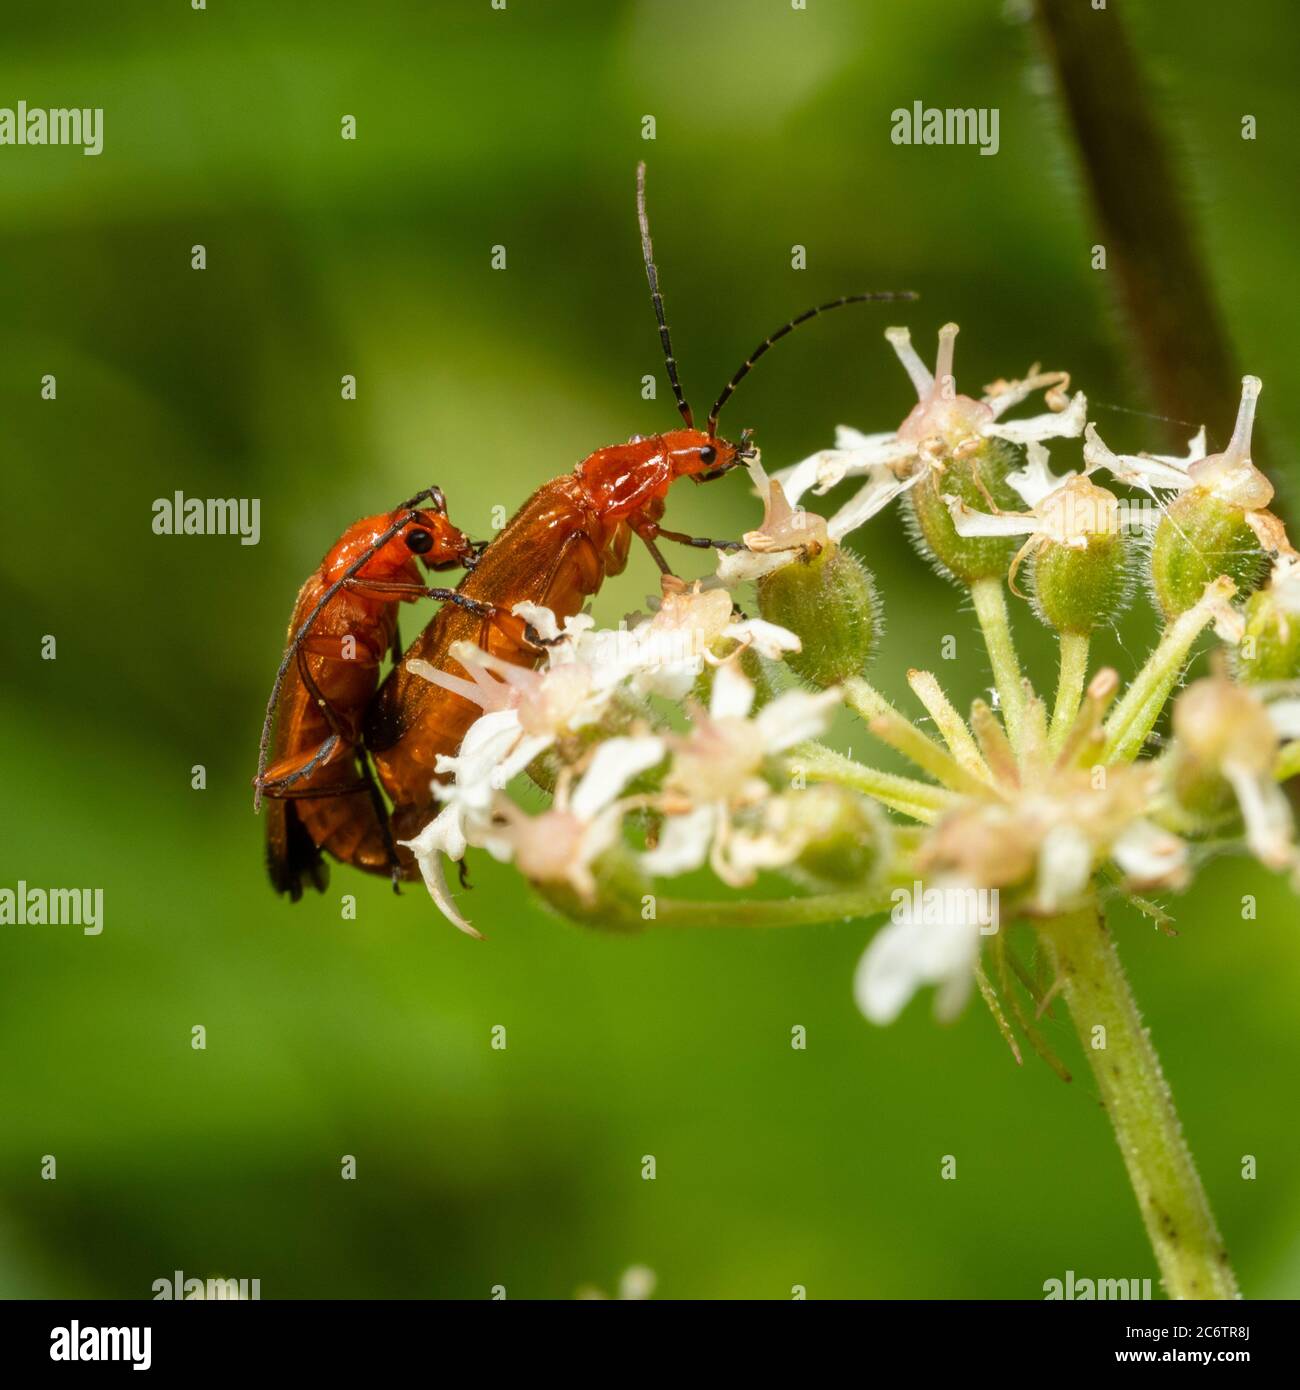 Des coléoptères de soldat rouge adultes, Rhagonycha fulva, se sont accouplés à la tête de fleur de l'herbe à poux, Heracleum spondylium, dans un pré britannique Banque D'Images